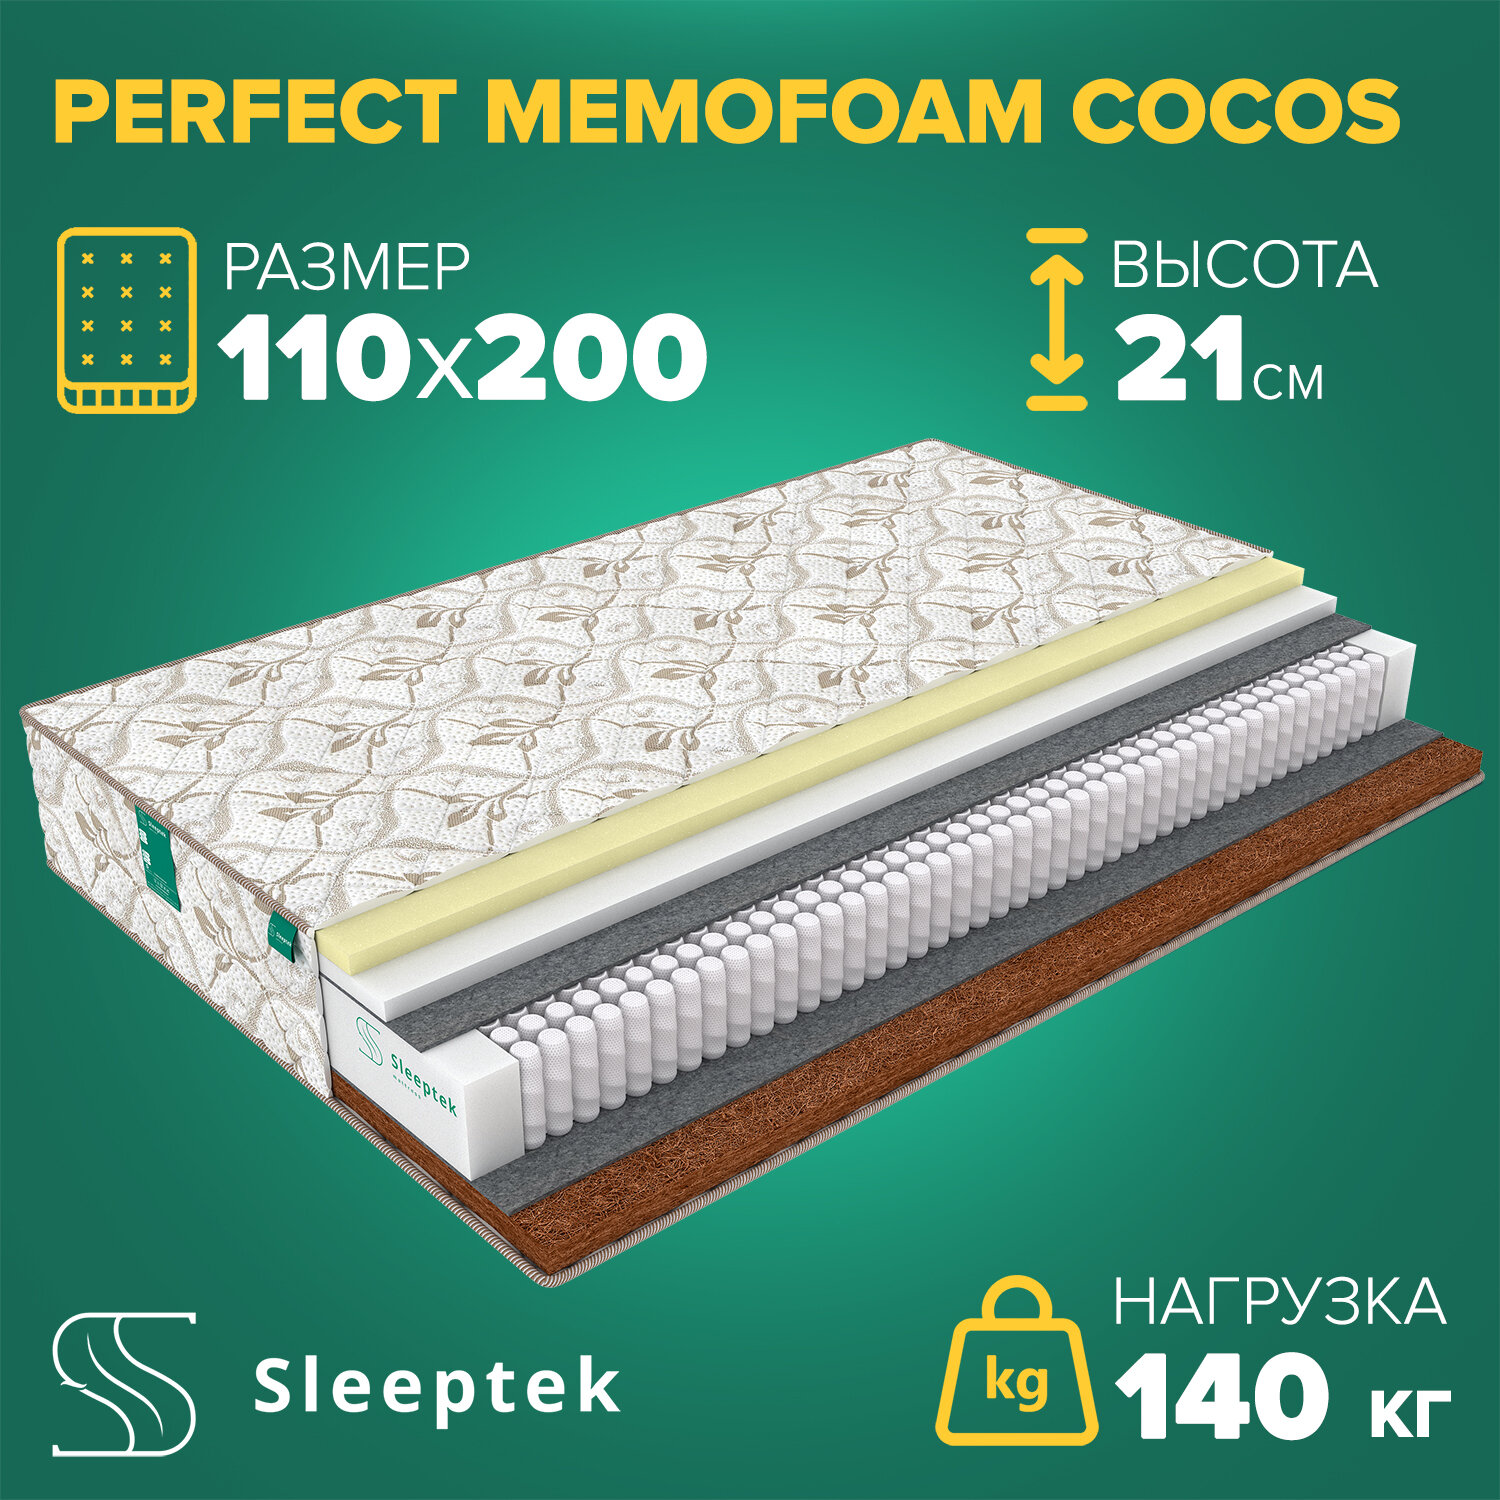 Матрас Sleeptek Perfect MemoFoam Cocos, 110х200 см